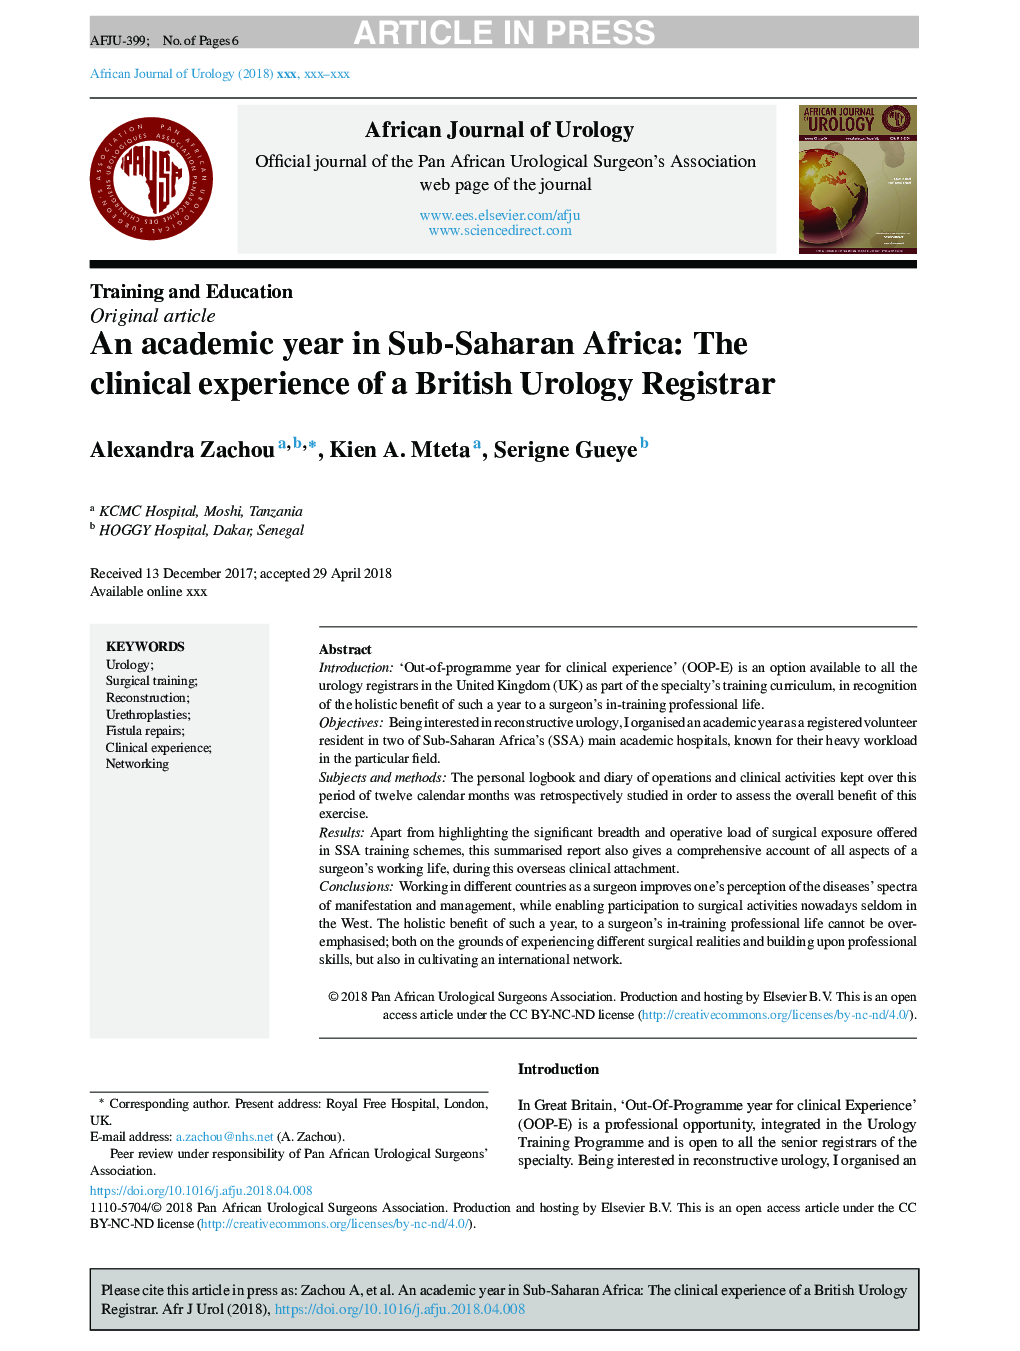 یک سال تحصیلی در کشورهای جنوب صحرای آفریقا: تجربه بالینی یک ثبت کننده اورولوژی بریتانیا